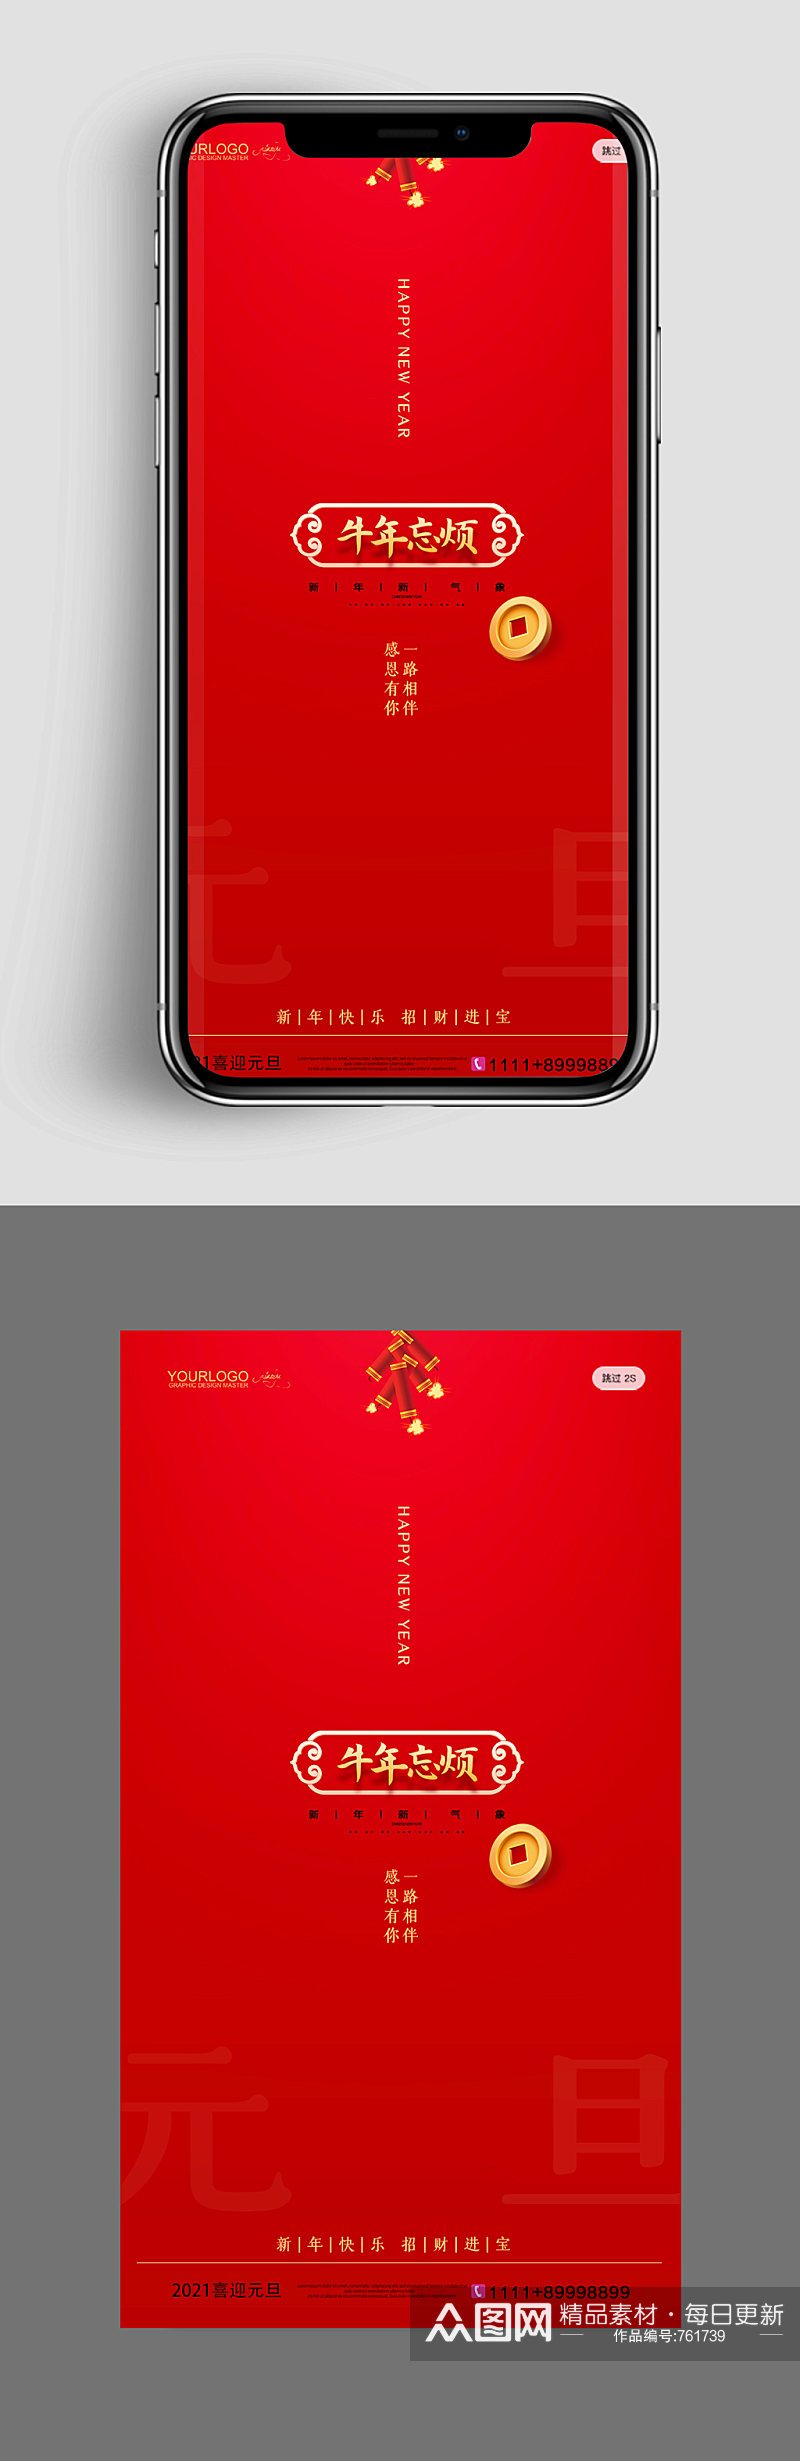 UI红色大气新年手机闪屏素材